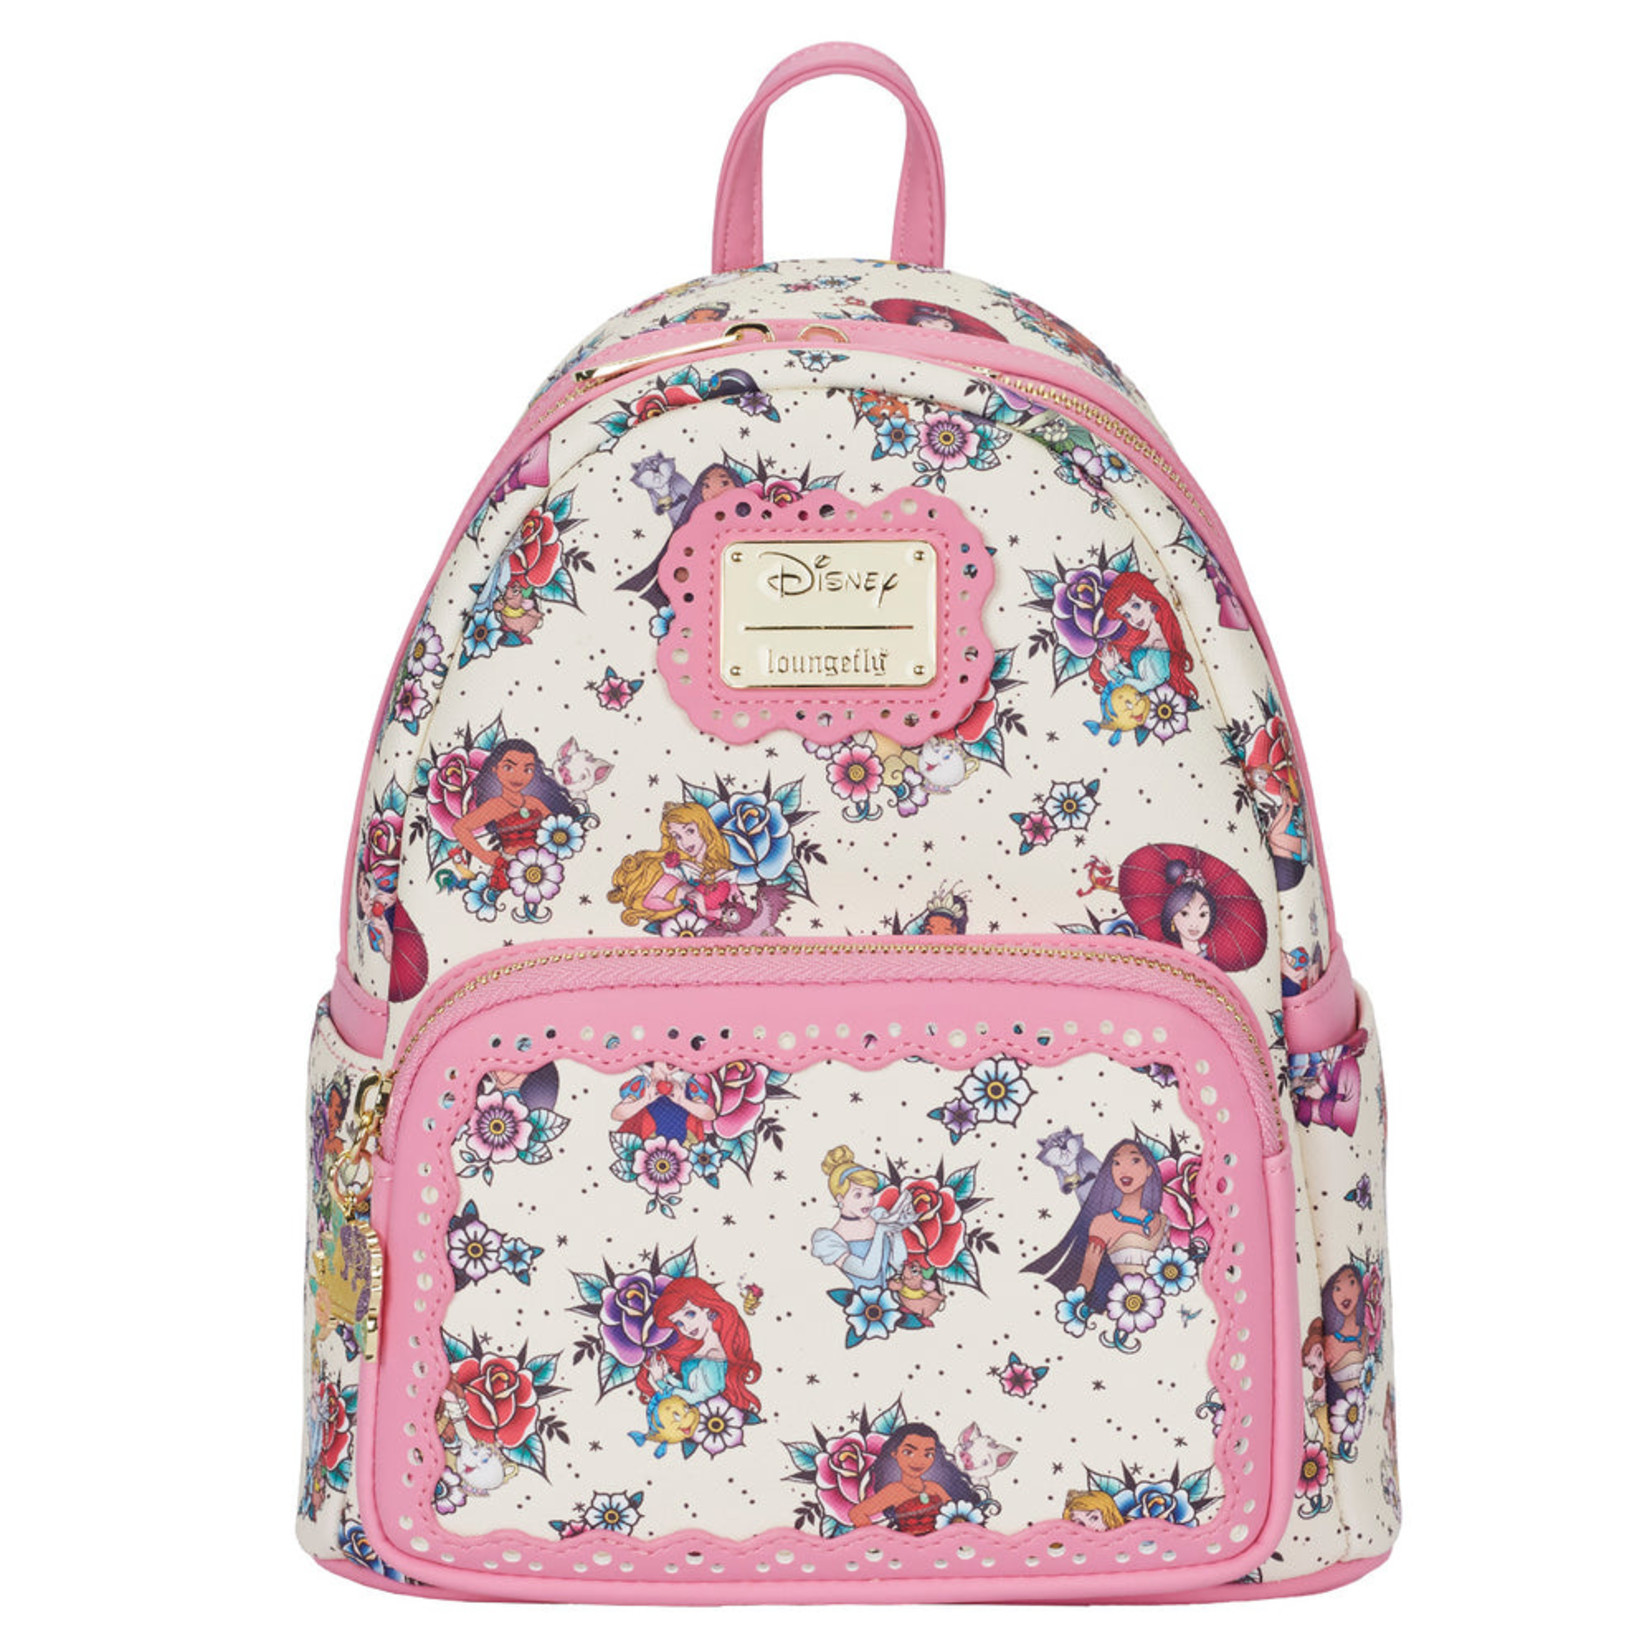 Hãy khám phá túi đeo chéo Floral Princess Tattoo Mini Backpack Loungefly Disney và đắm chìm trong thế giới cổ tích! Thiết kế phong cách và đầy màu sắc này sẽ trở thành điểm nhấn cho thời trang của bạn. Với khả năng đựng đồ rộng rãi, chiếc túi thực sự là một lựa chọn tuyệt vời cho những chuyến đi dài.